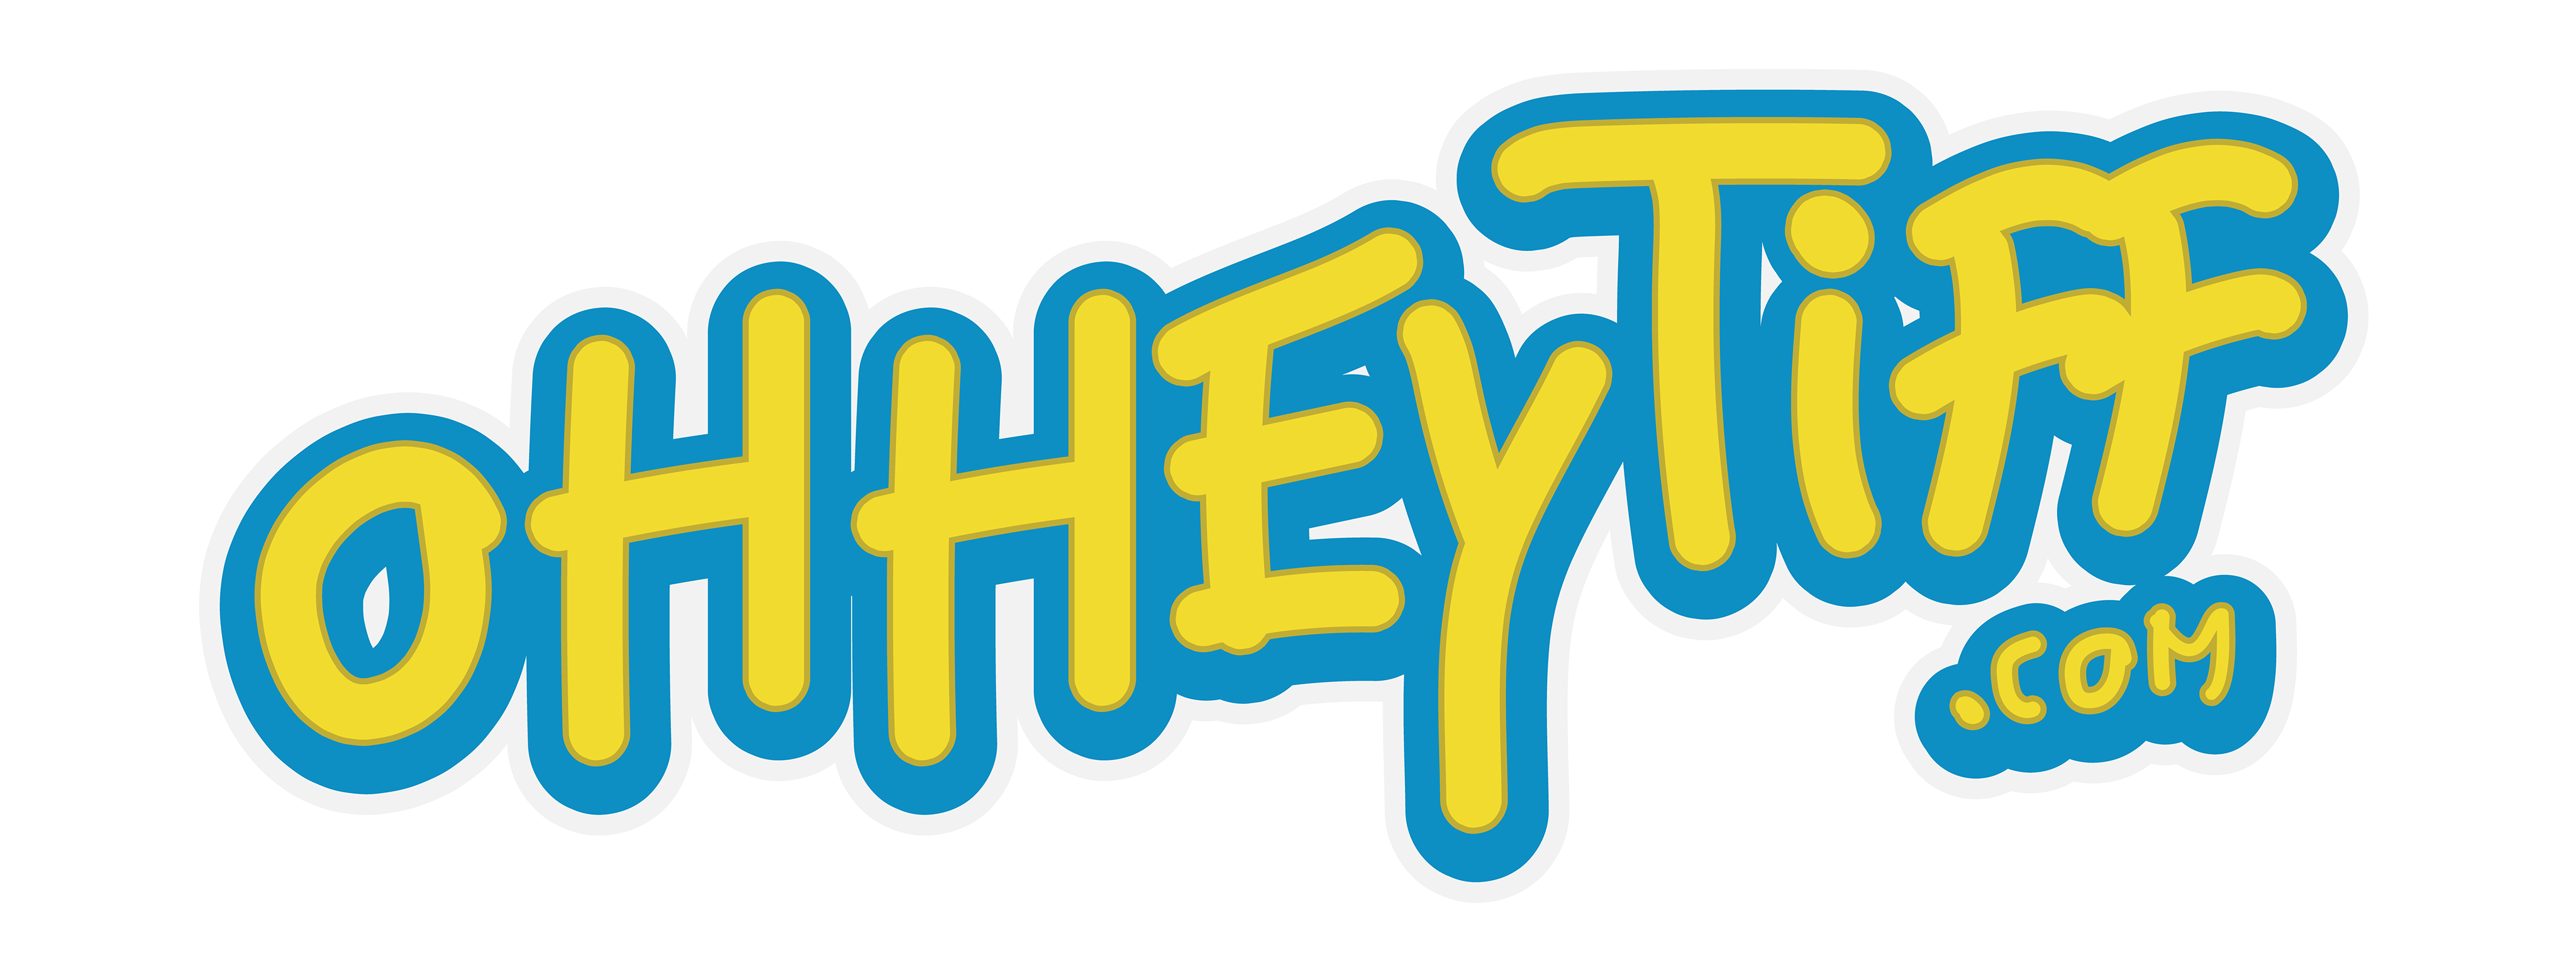 Ohheytiff Logo